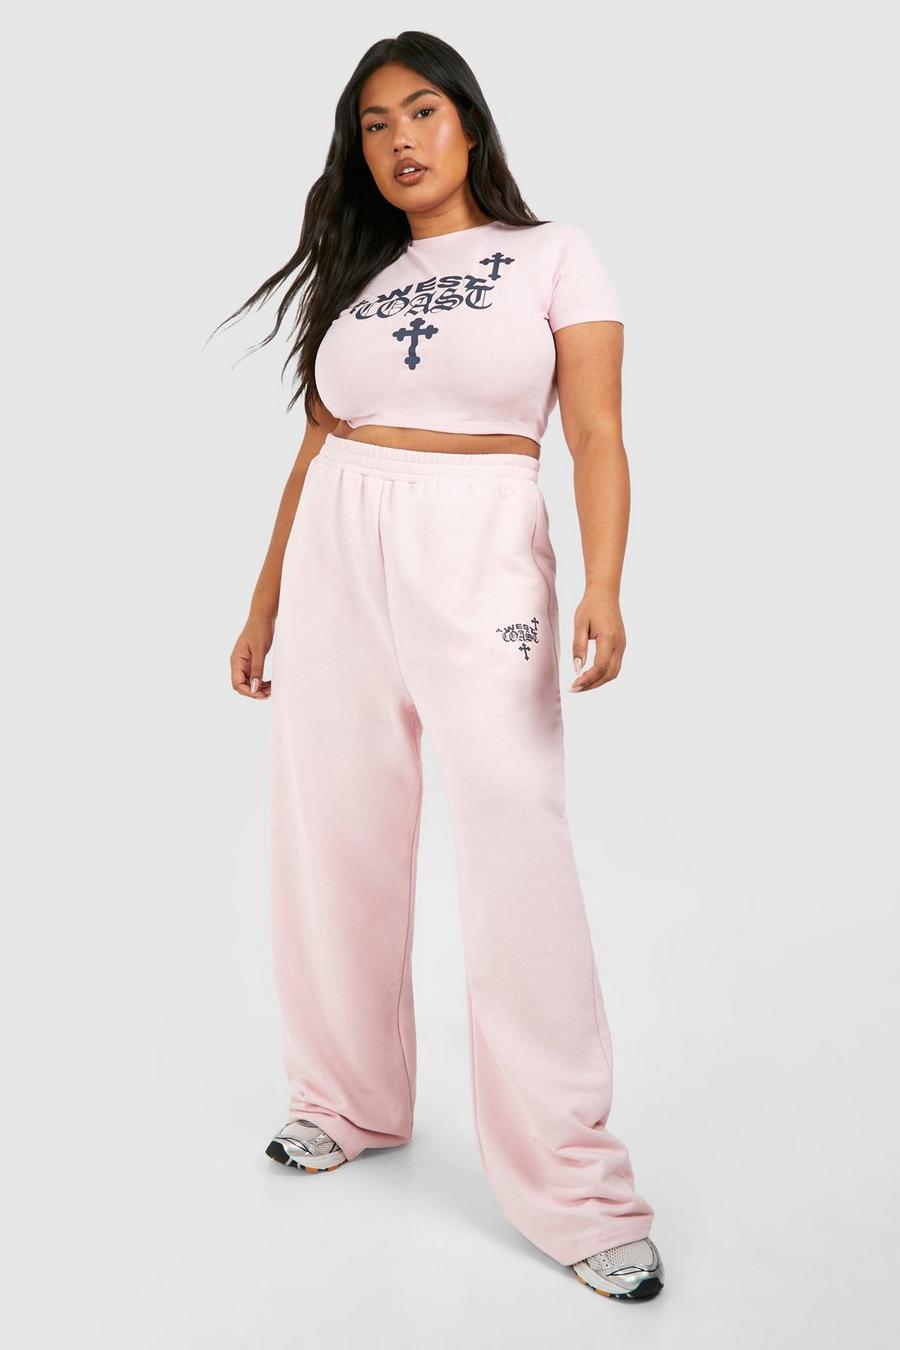 Grande taille - Ensemble à imprimé West Coast Cross avec t-shirt court et jogging, Baby pink